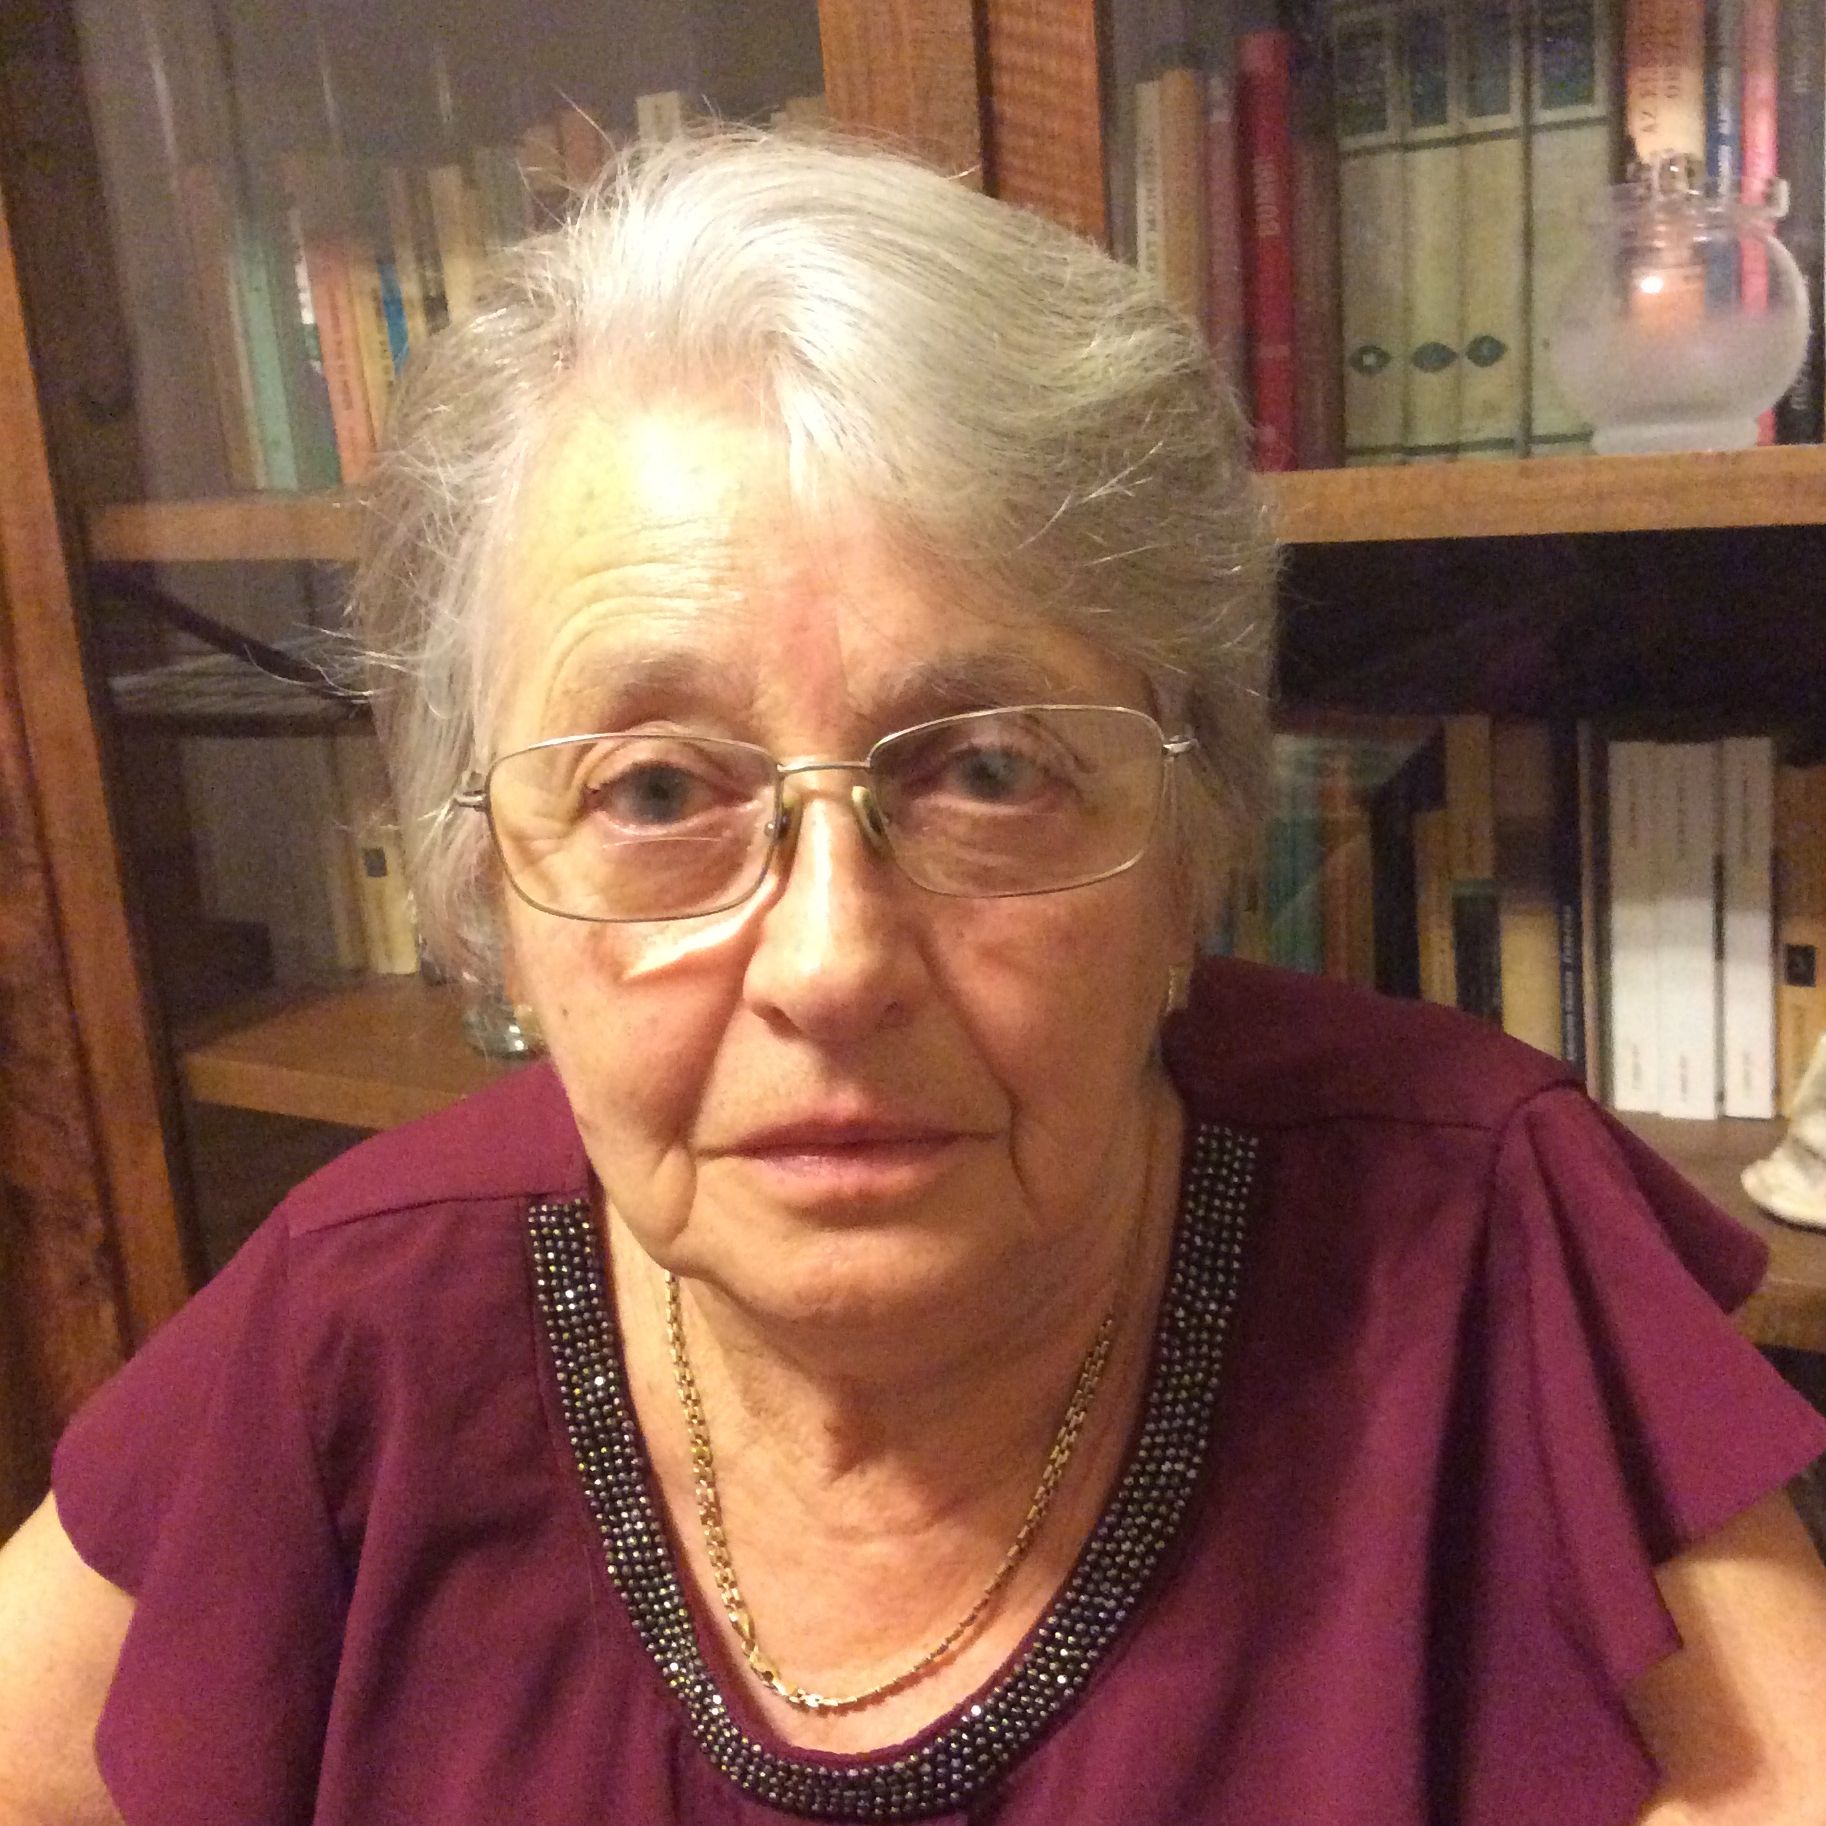 Dr. Uzoni Katalin